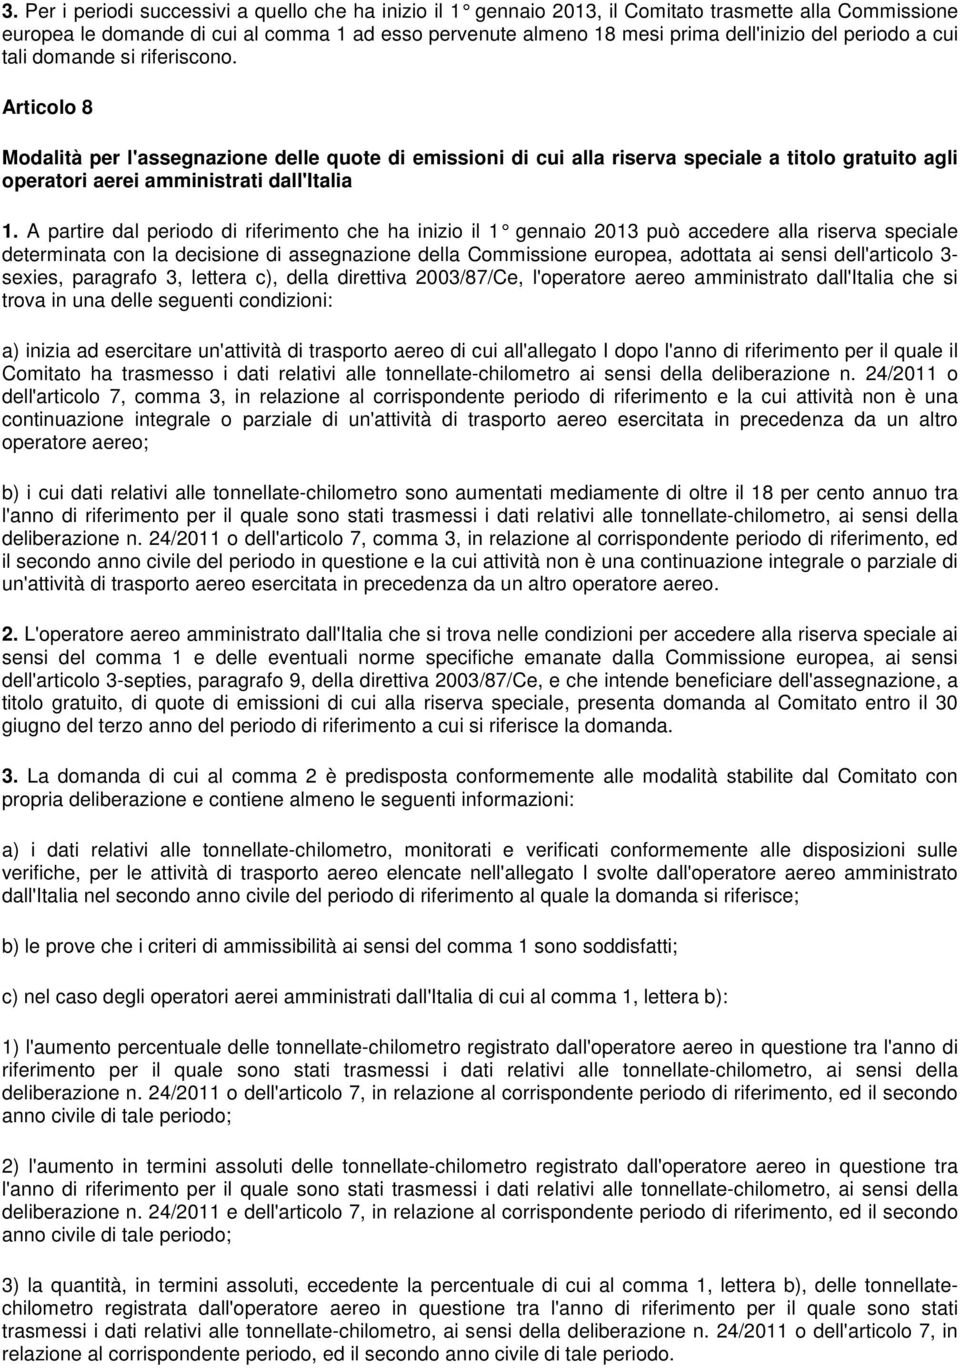 Articolo 8 Modalità per l'assegnazione delle quote di emissioni di cui alla riserva speciale a titolo gratuito agli operatori aerei amministrati dall'italia 1.